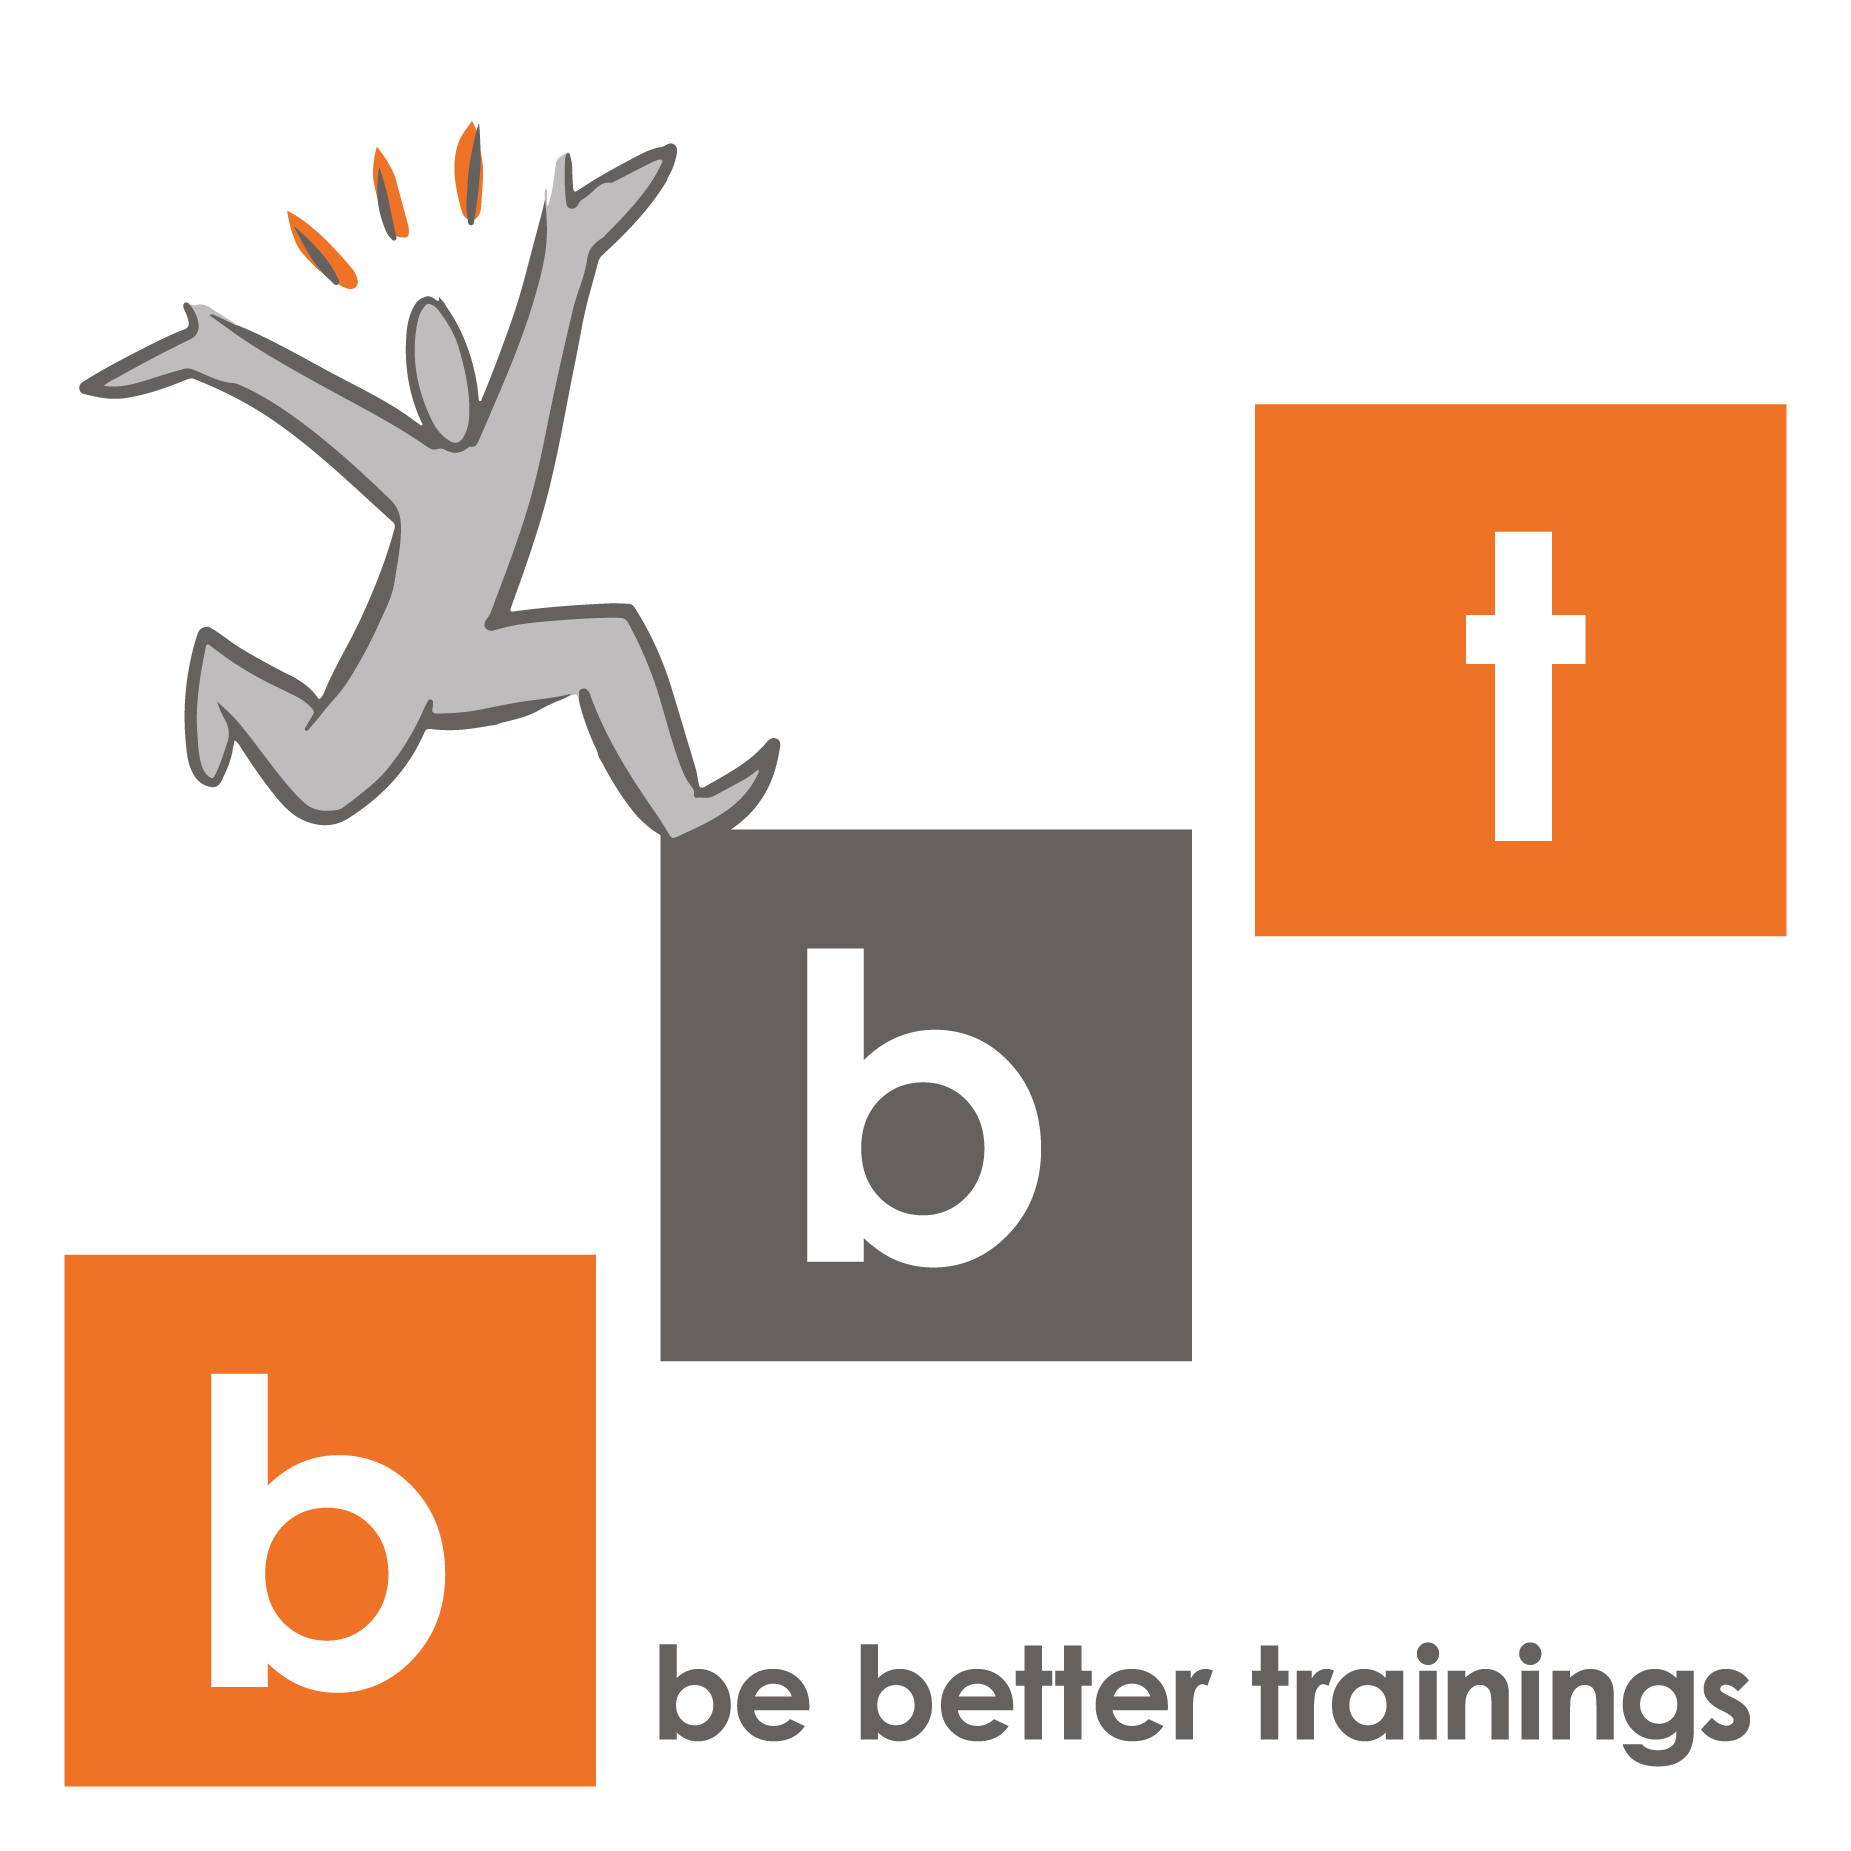 be better trainings